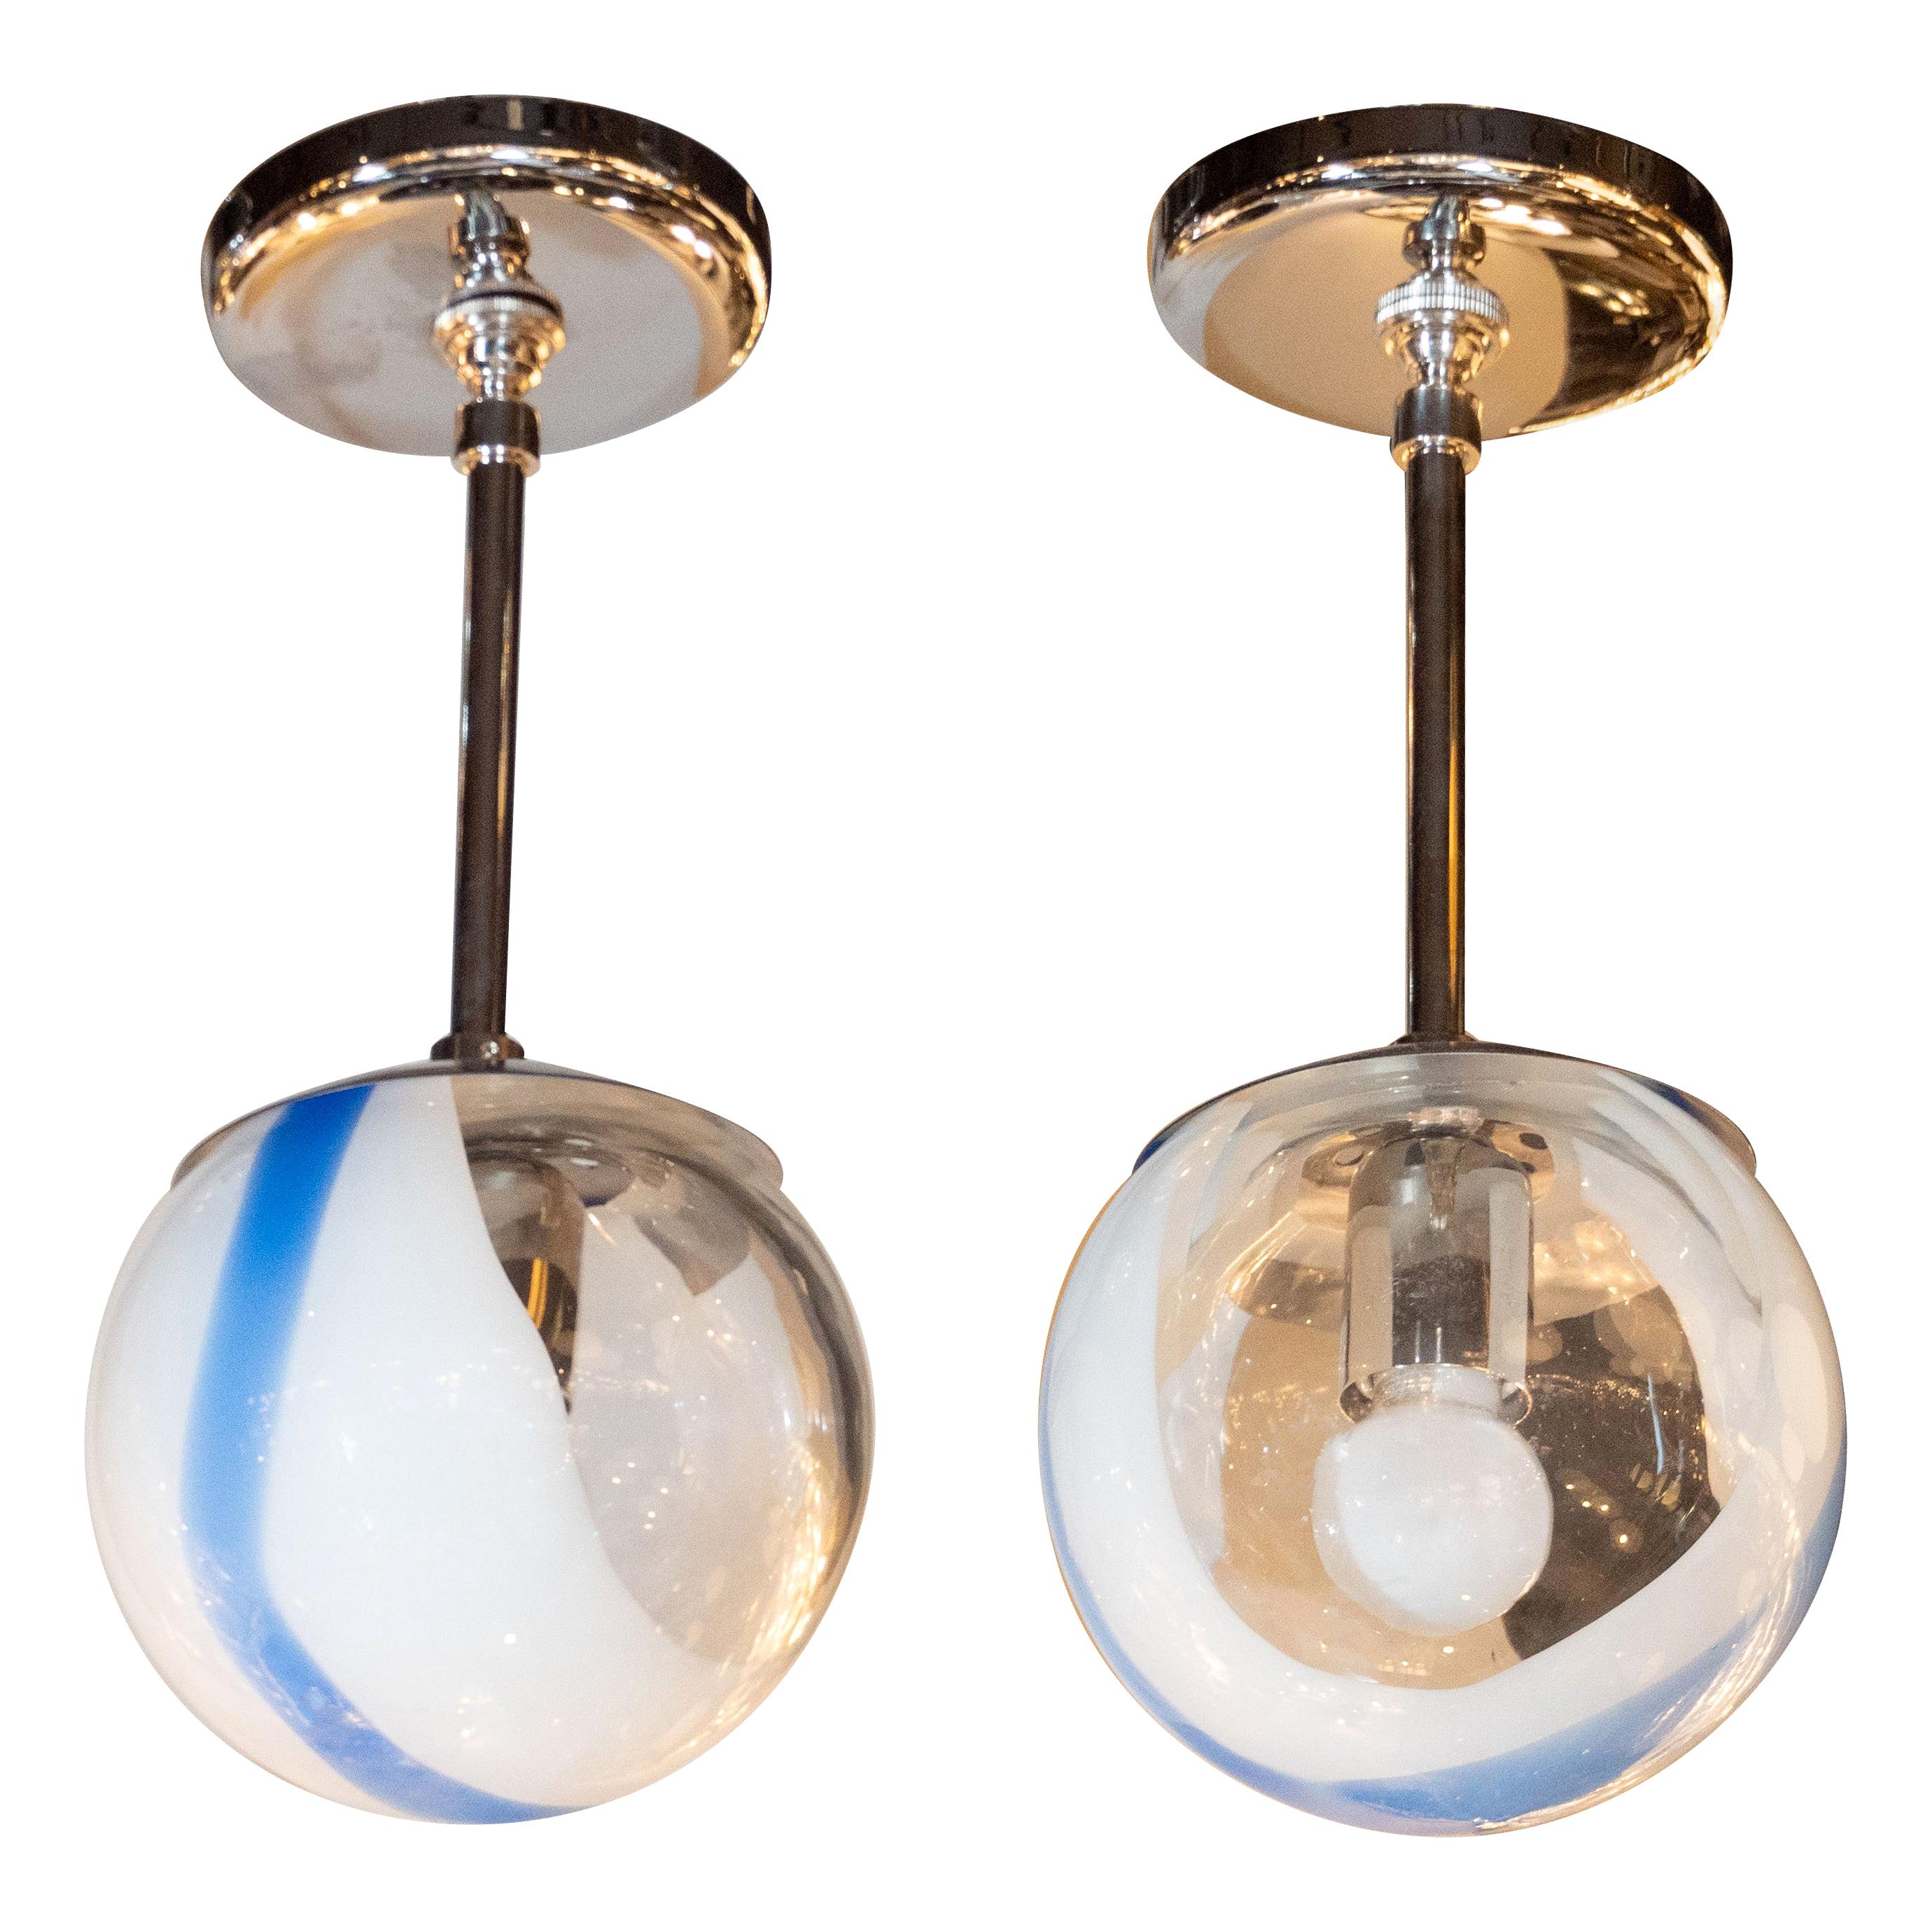 Pair of Handblown Custom Murano White/Indigo Glass Pendants with Chrome Fittings